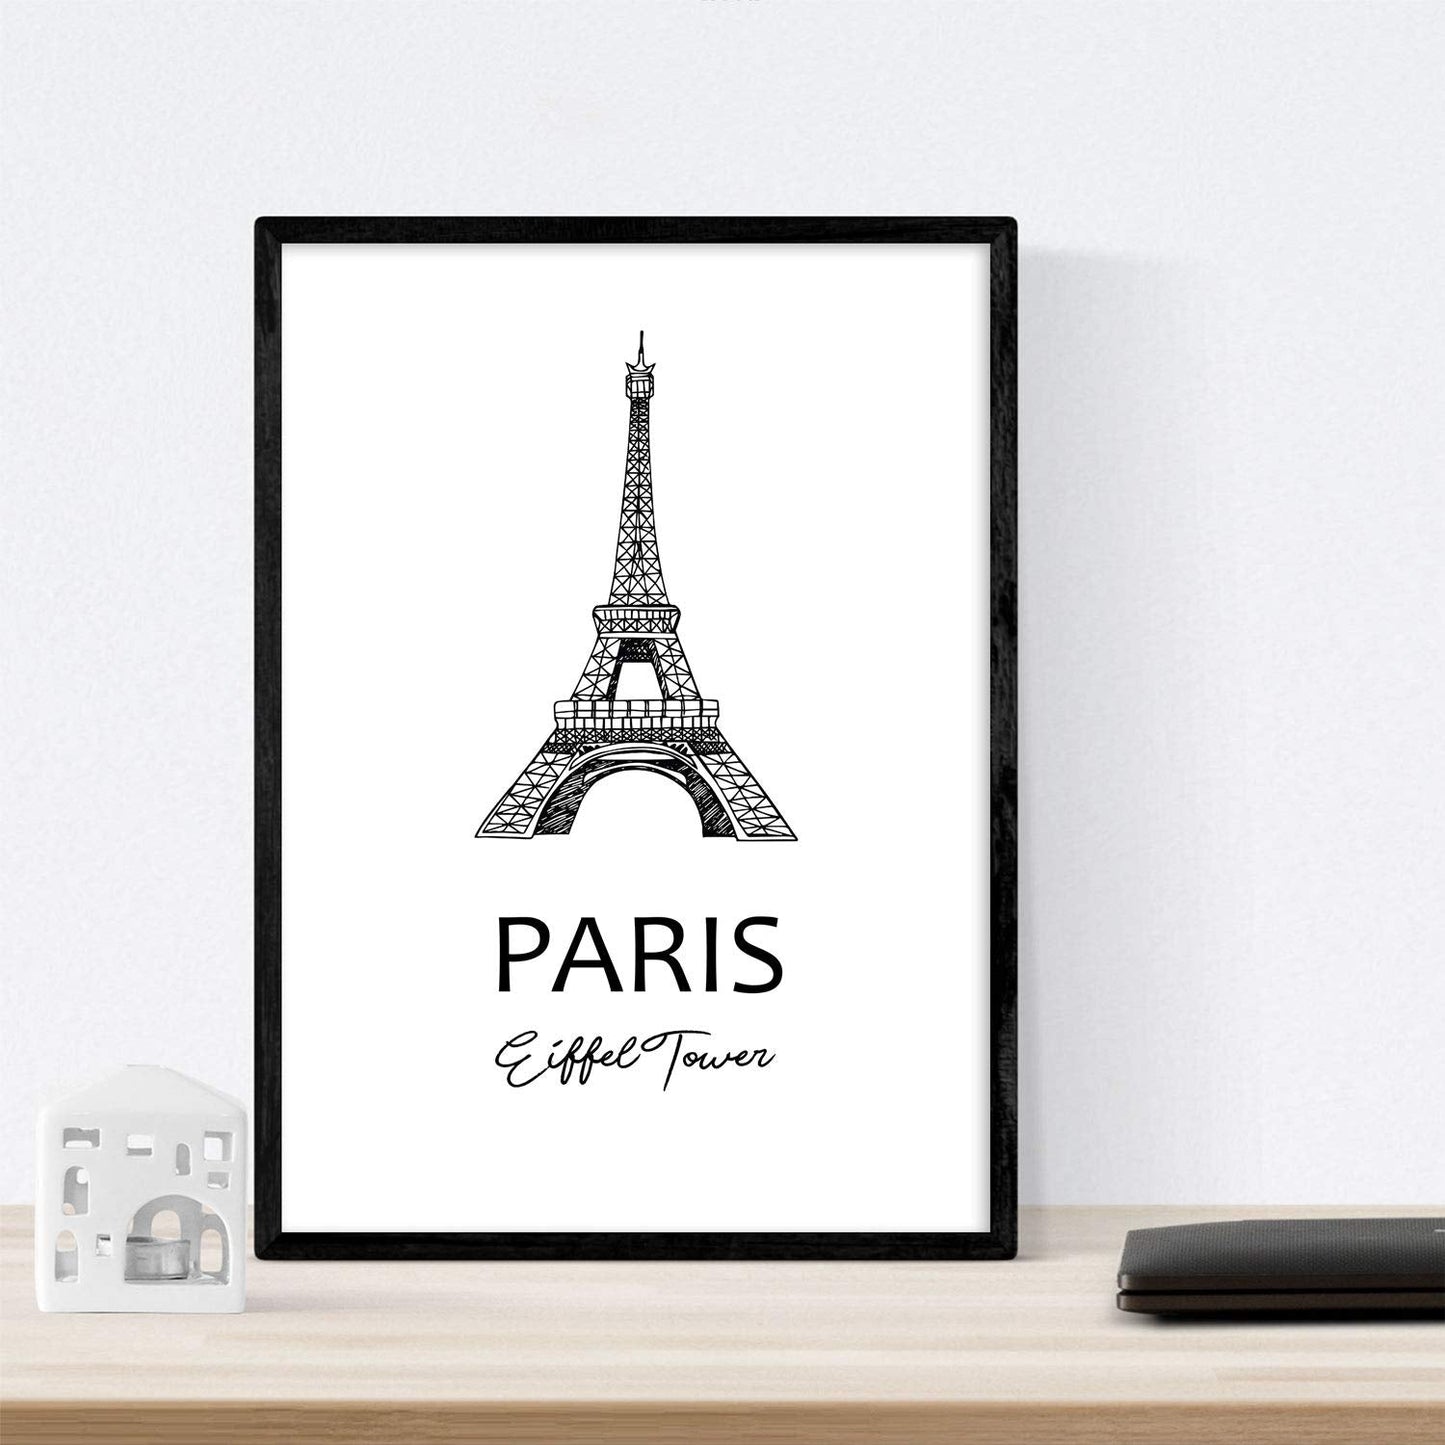 Pack de posters de paises y monumentos. Mapa ciudad de paris, monumento torre Eifell y mapa Francia.-Artwork-Nacnic-Nacnic Estudio SL